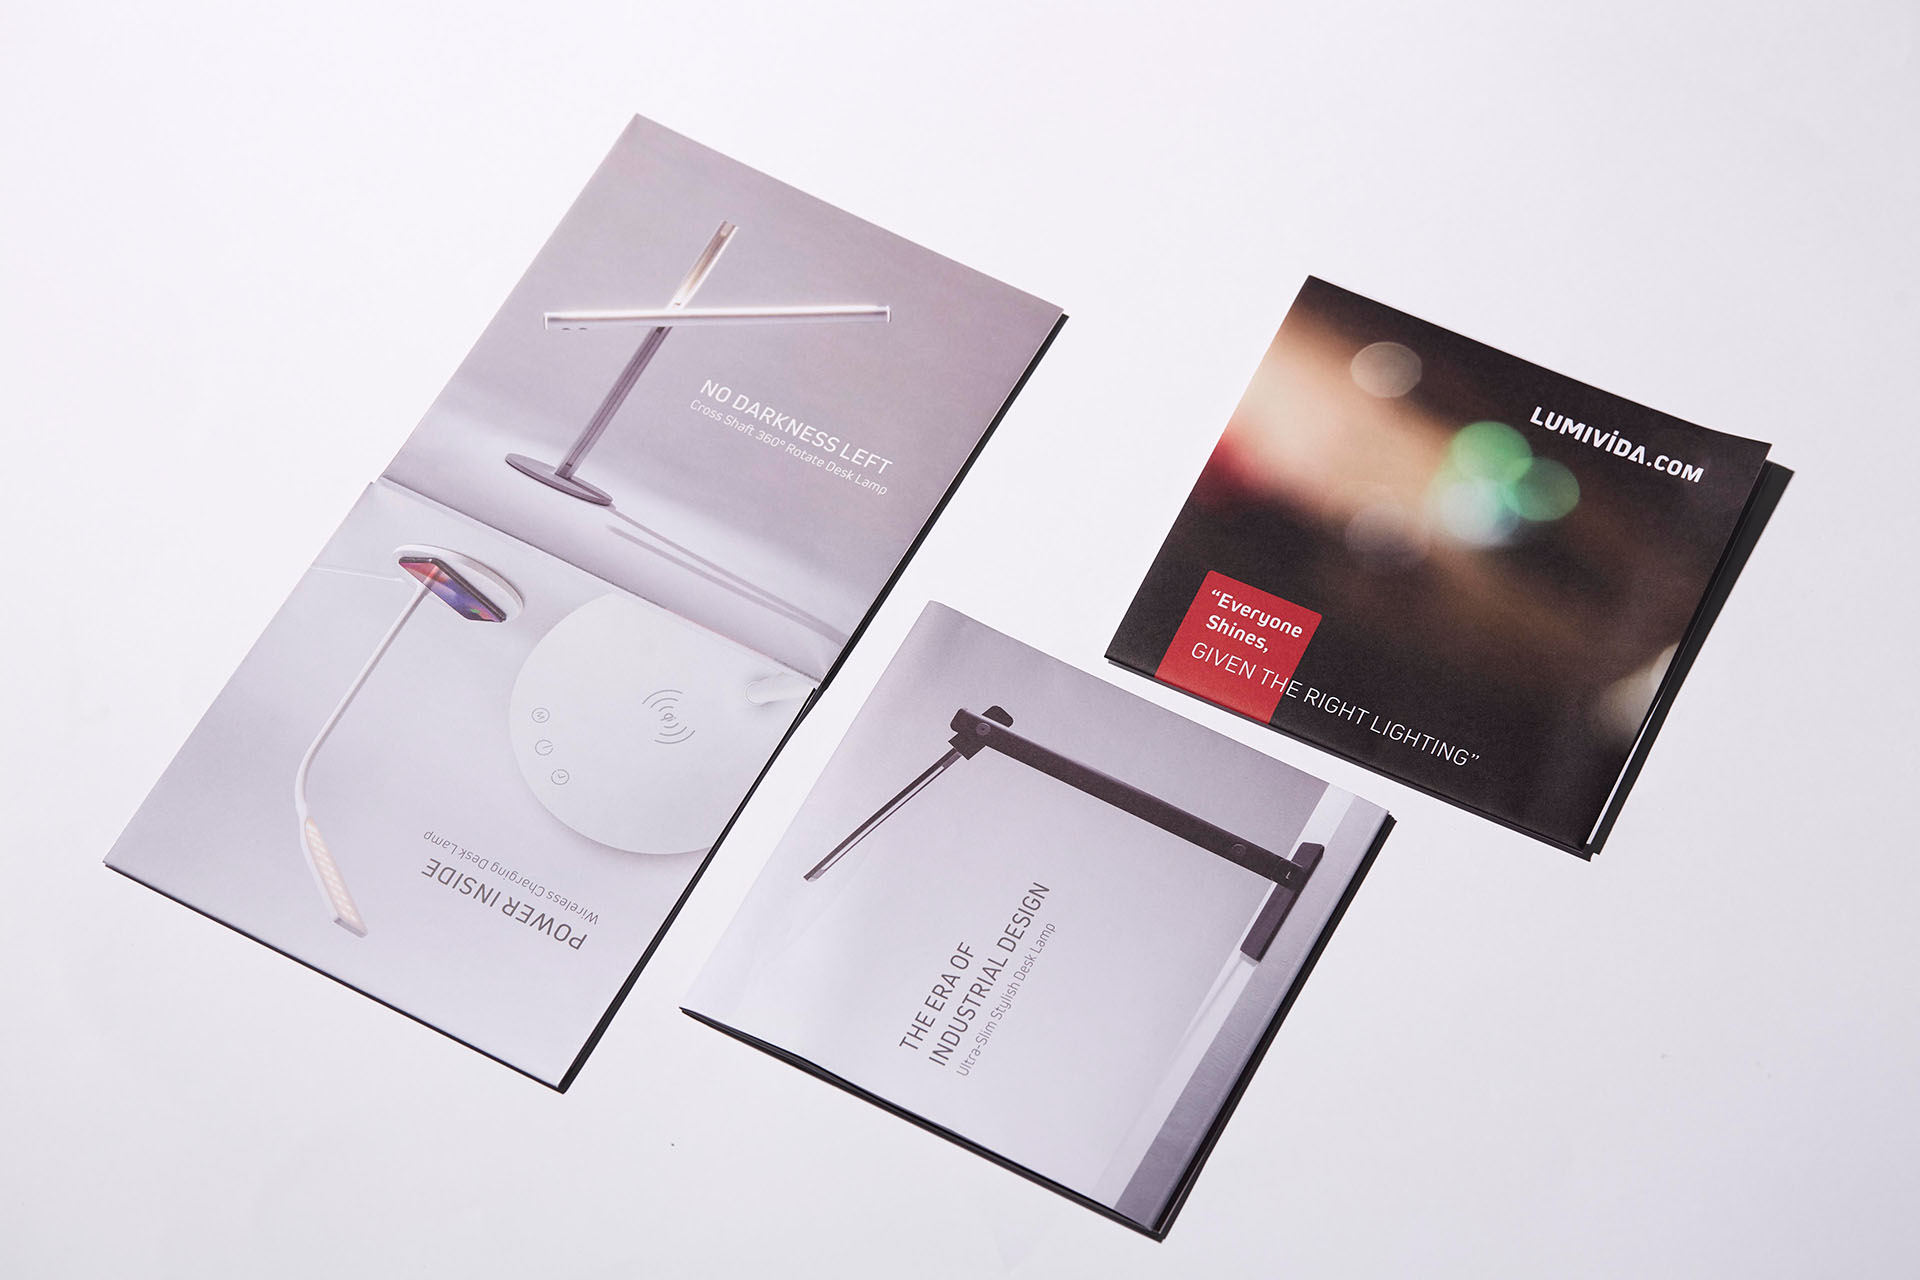 LUMIVIDA LED Desk Lamp Brochure Designed by Treefruit